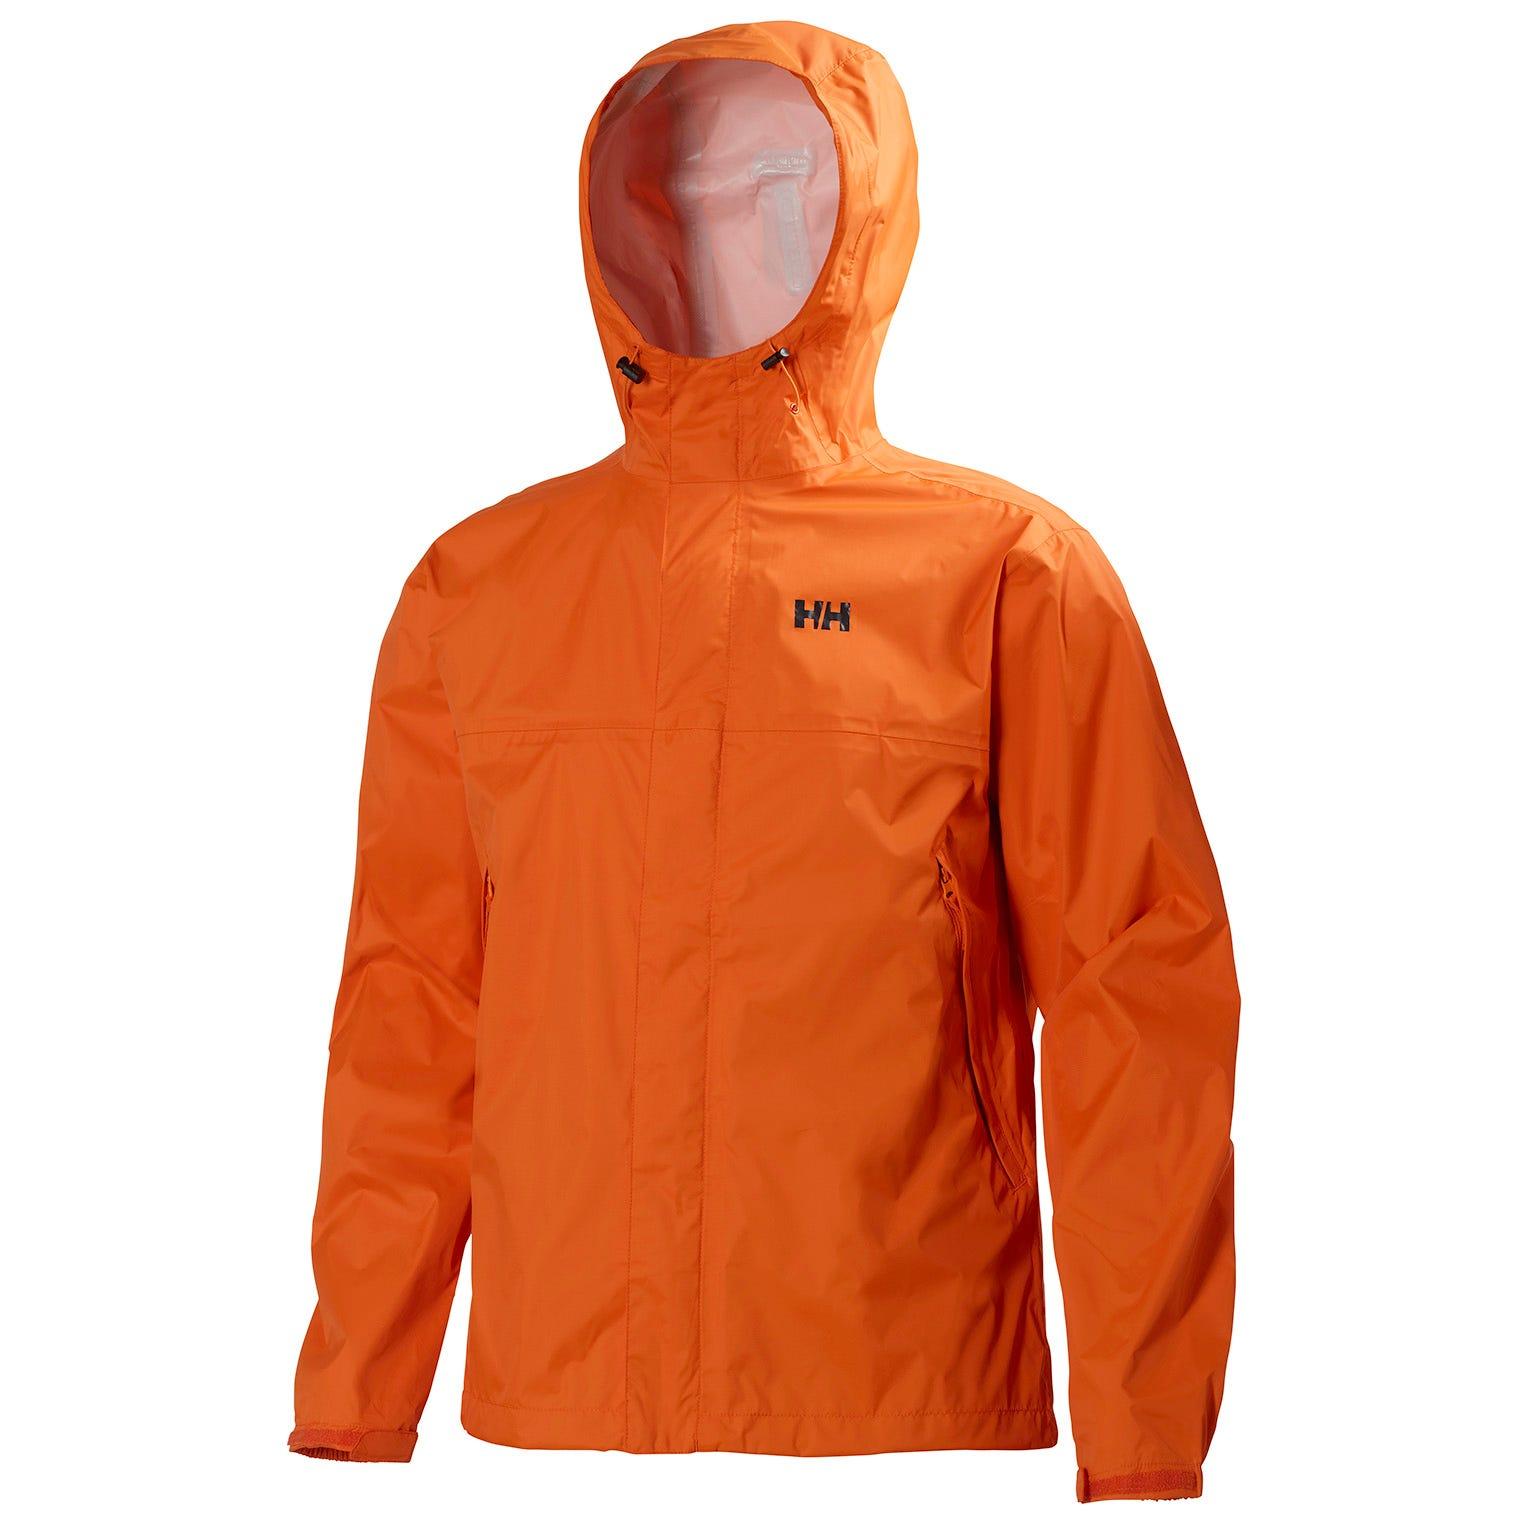 Helly Hansen Loke Jacket in Orange for Men - Lyst